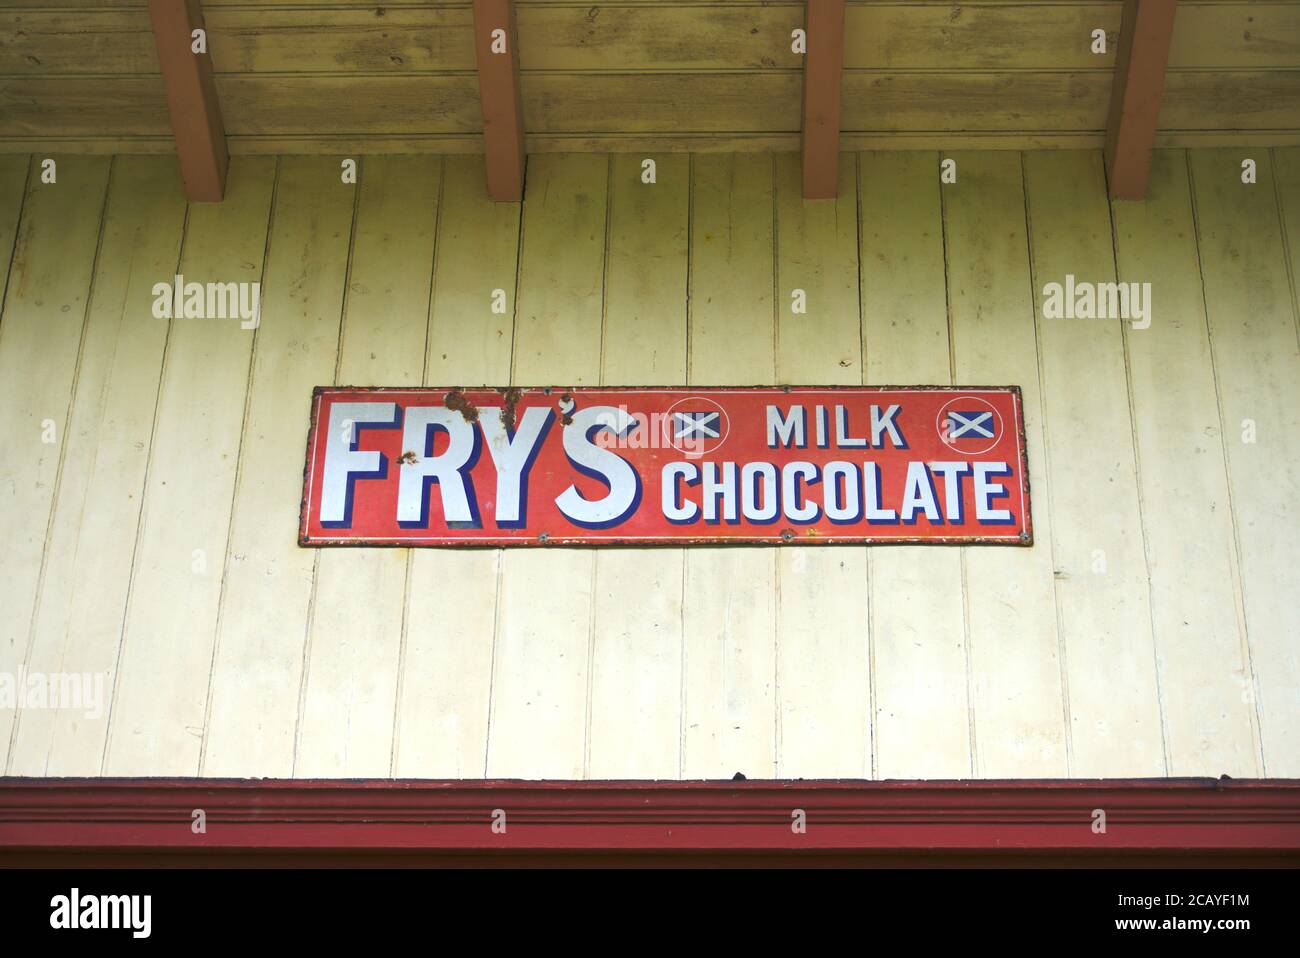 Fry's Leche Chocolate signo/ad Placa De Metal Retro 